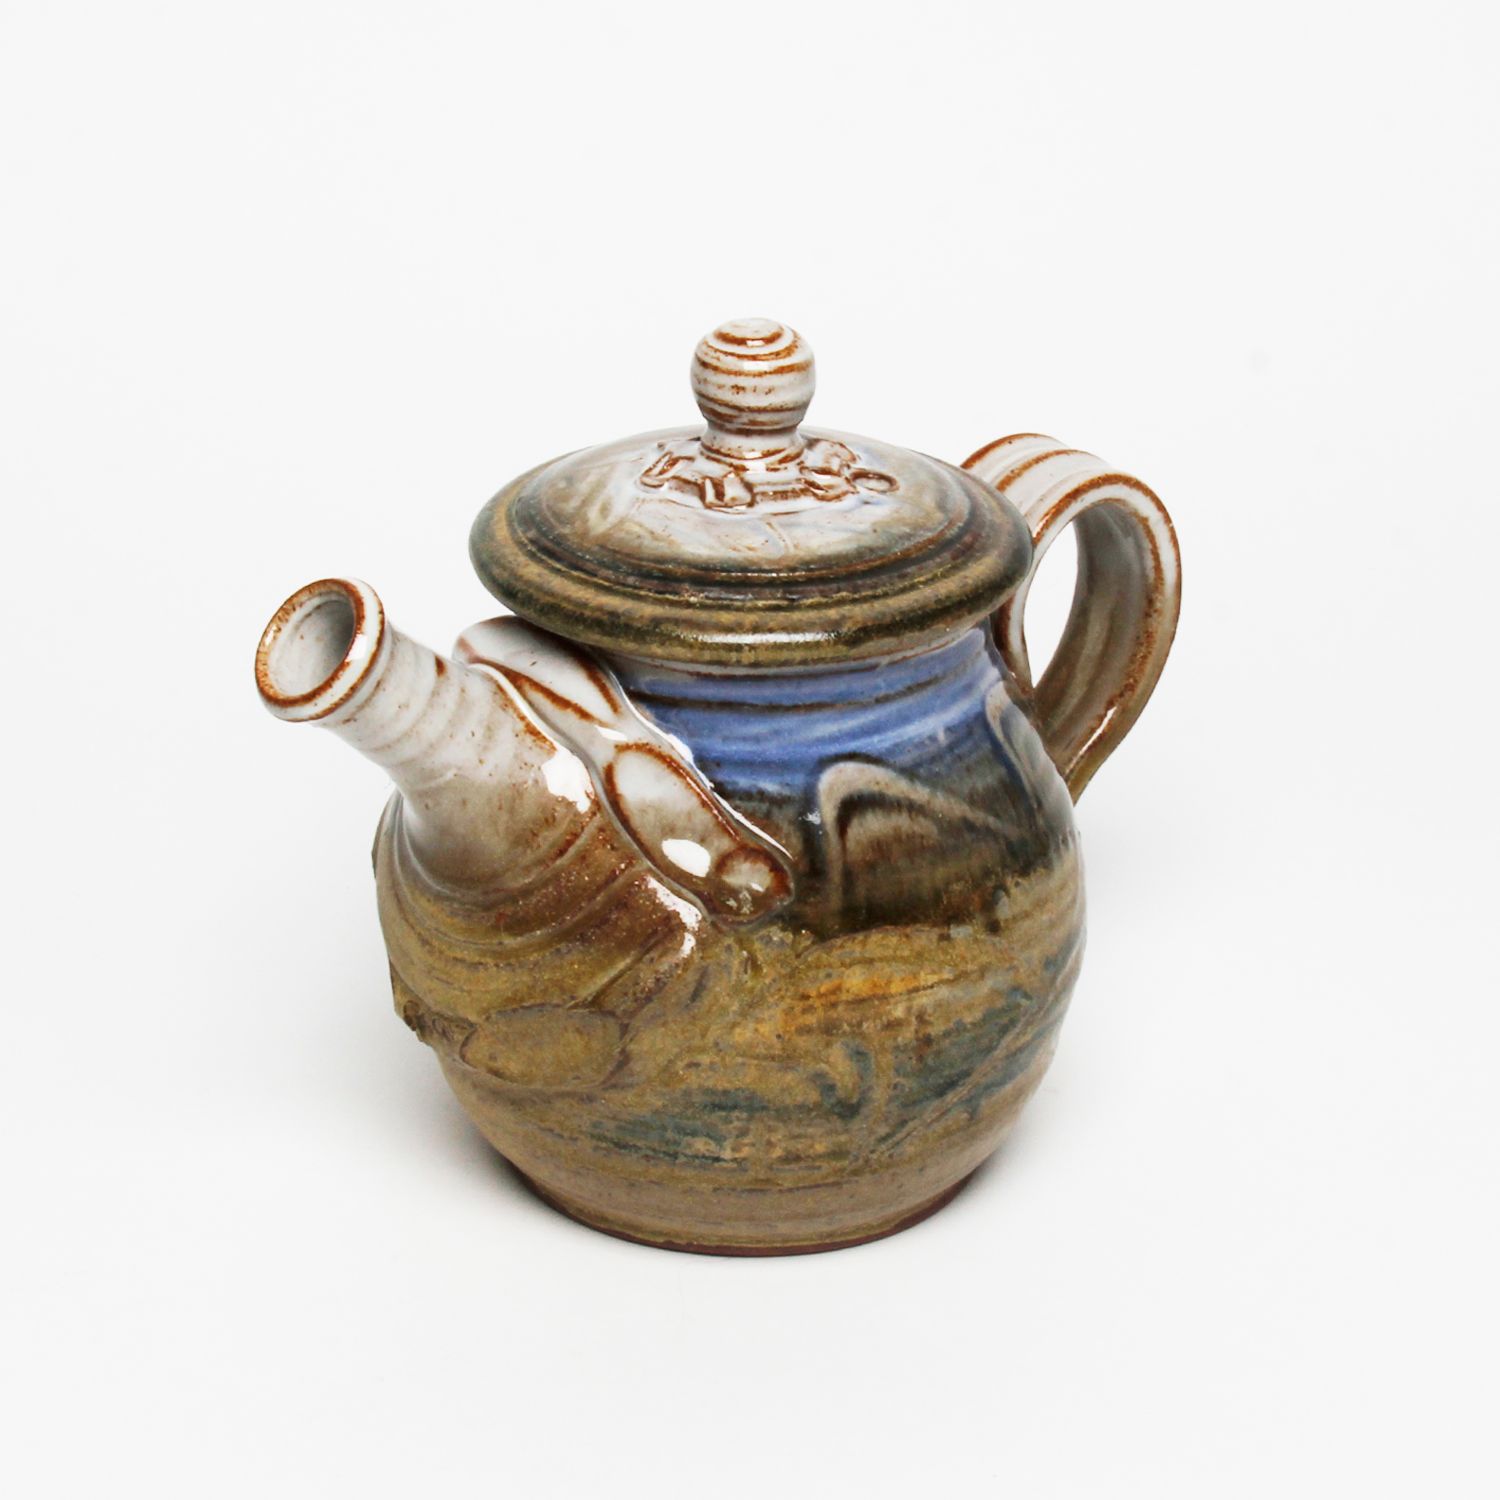 Wayne Cardinalli: Blue Teapot Product Image 1 of 4